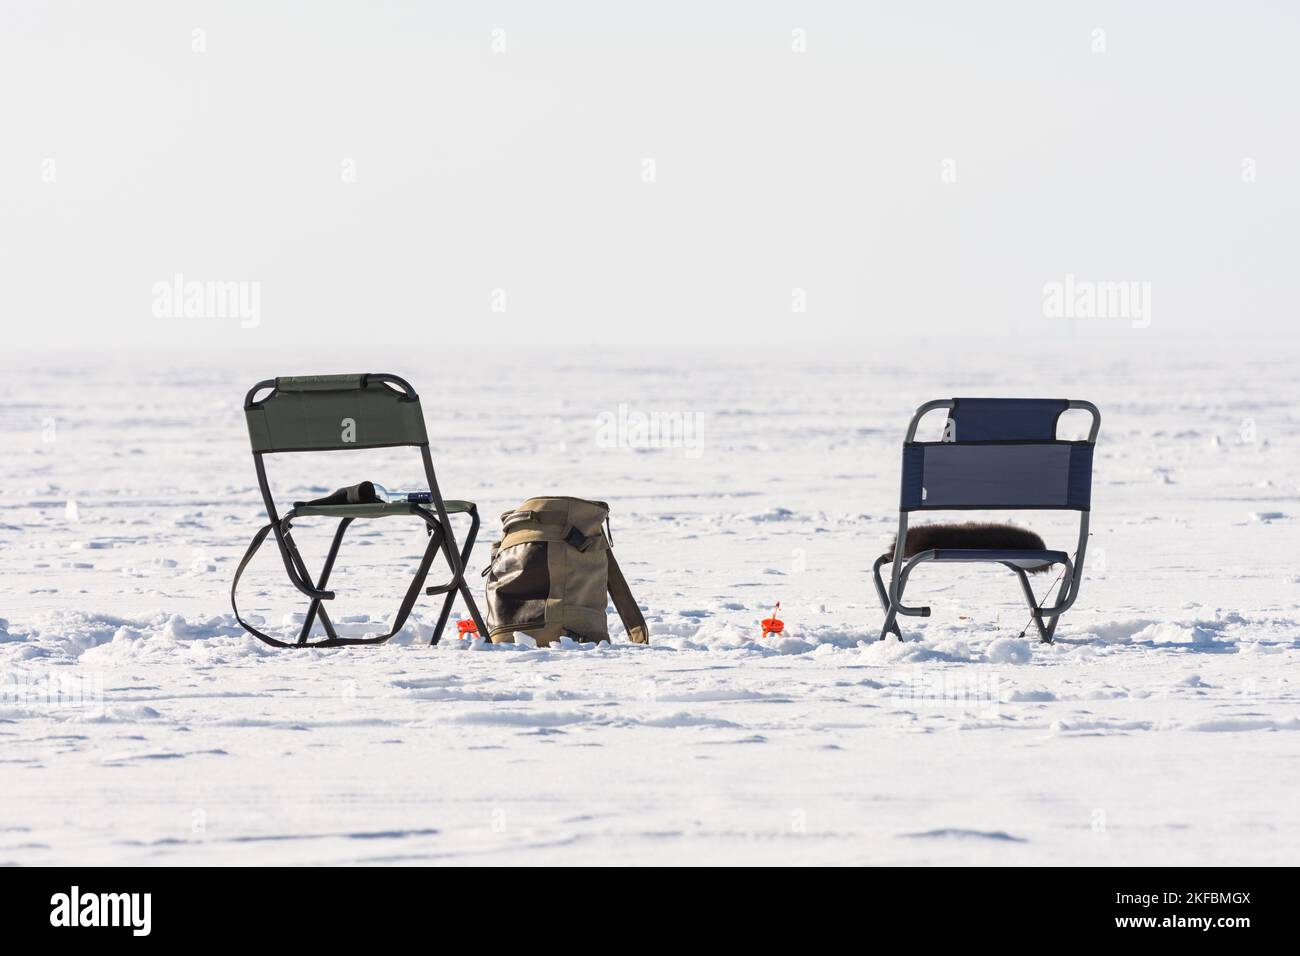 Une paire de chaises sur la glace pendant la pêche d'hiver Banque D'Images